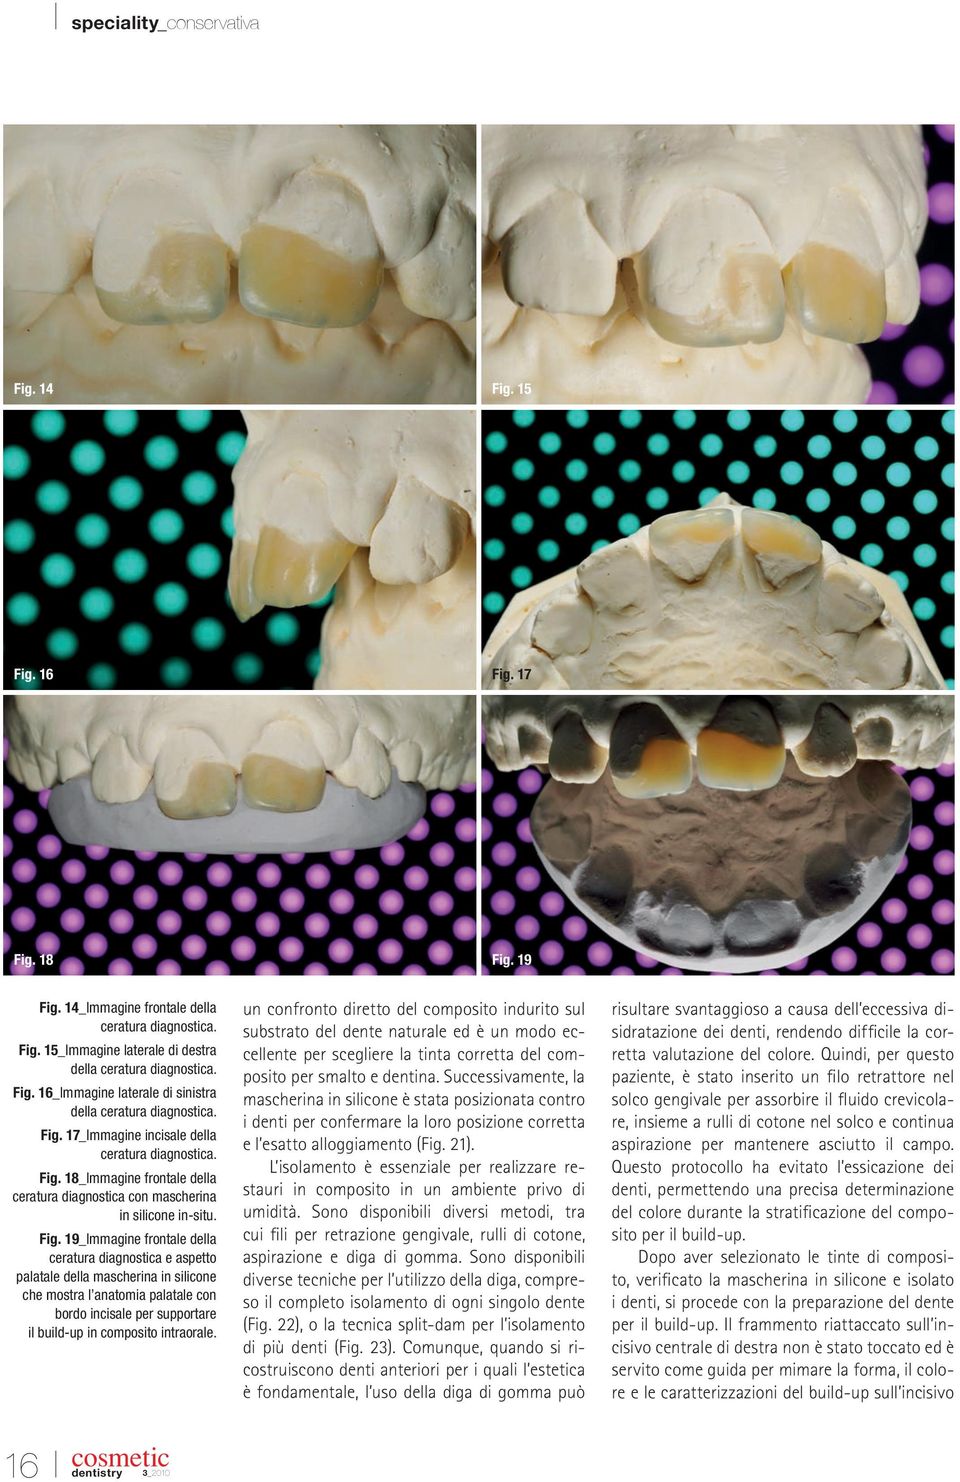 18_Immagine frontale della ceratura diagnostica con mascherina in silicone in-situ. Fig.